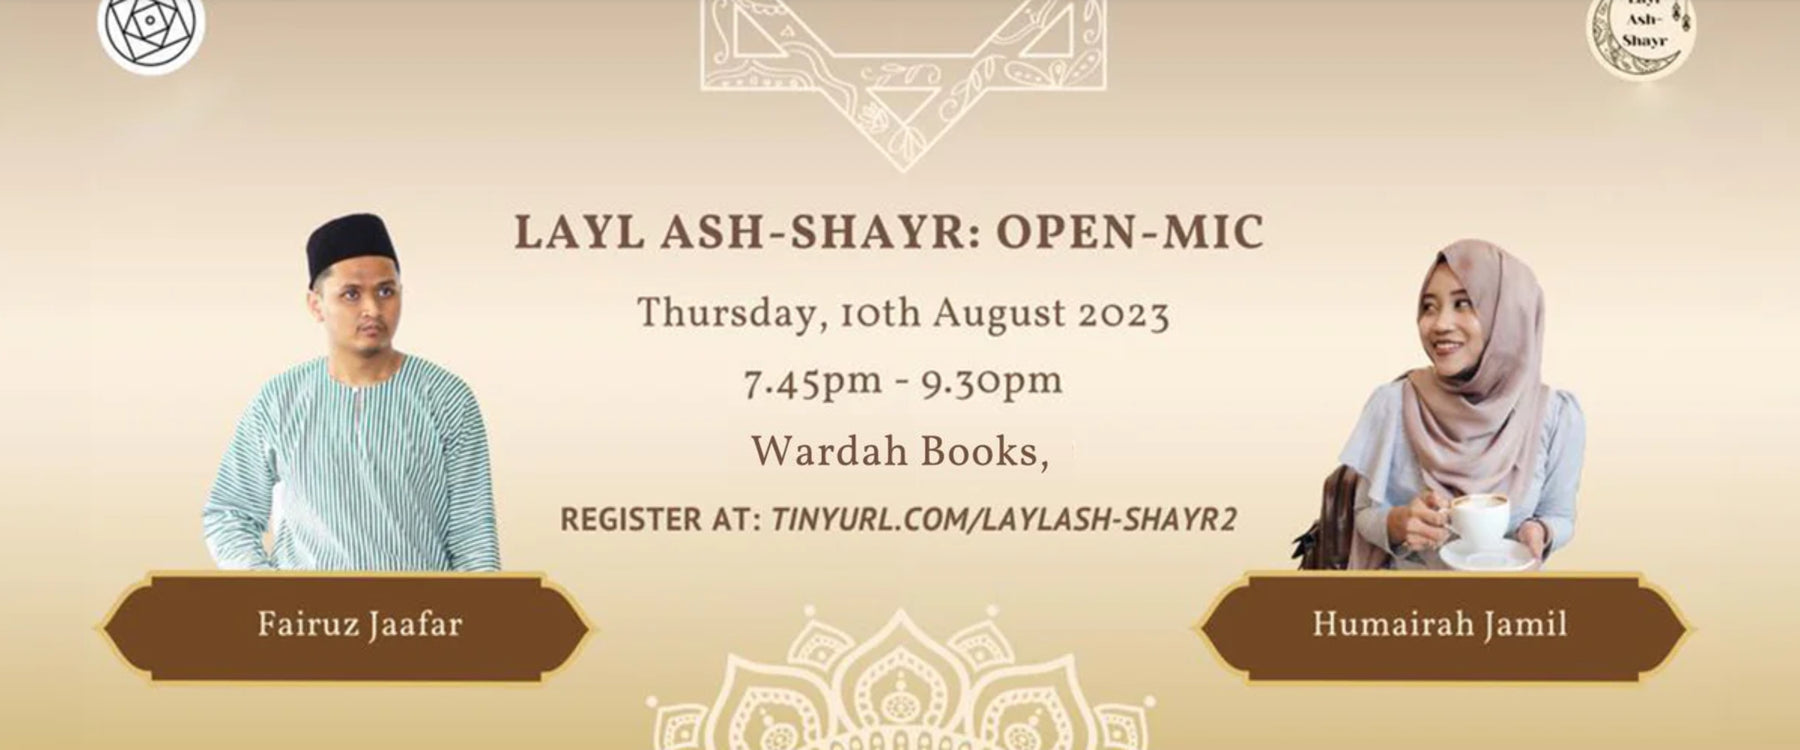 Layl Ash-Shayr 2